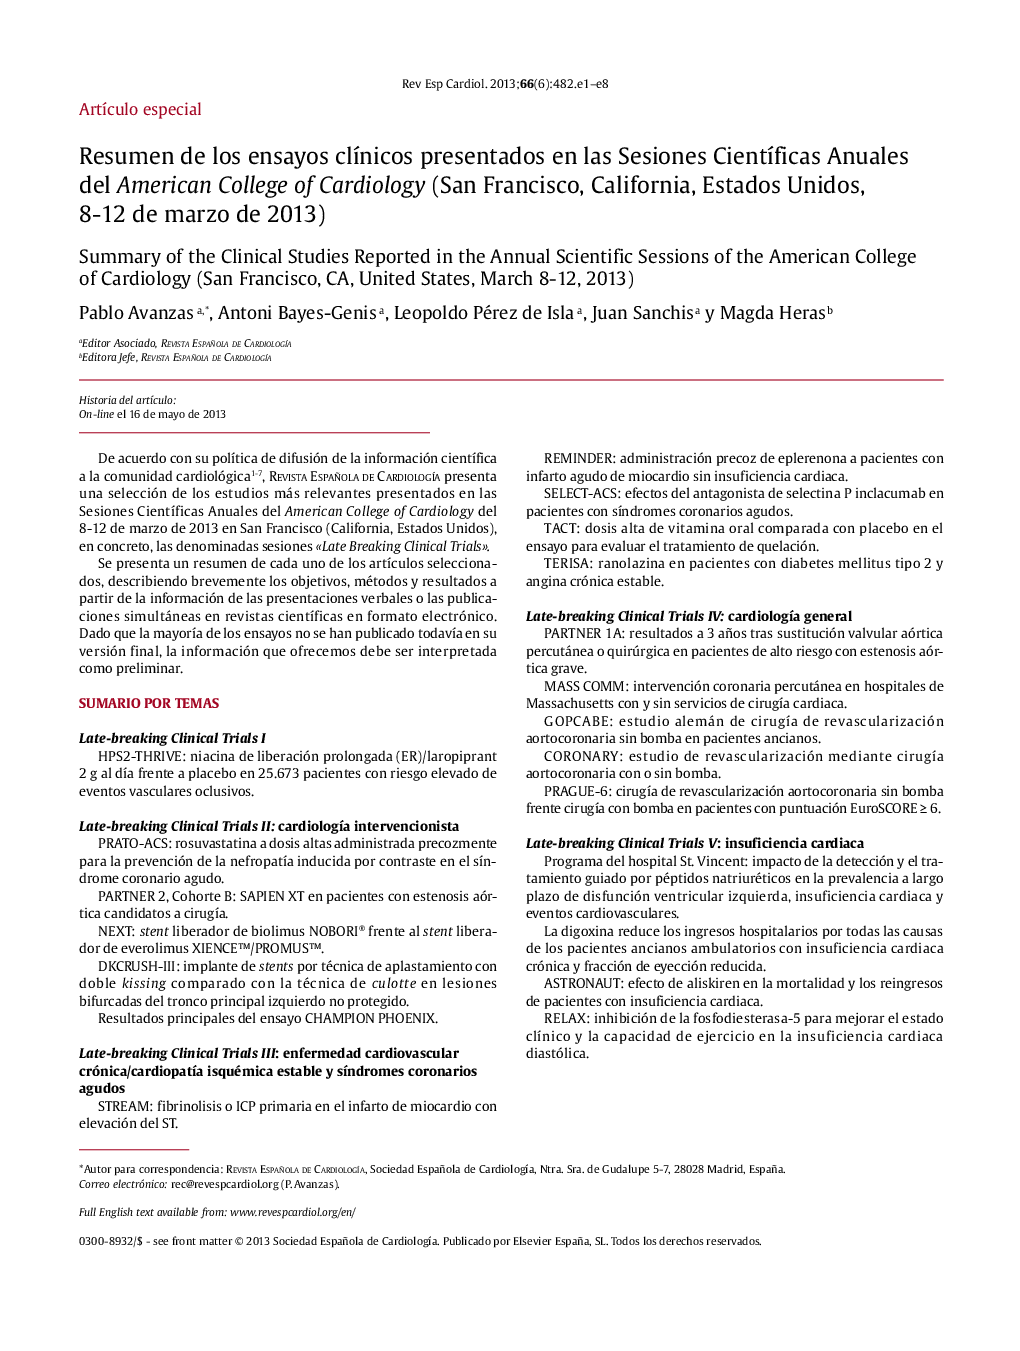 Resumen de los ensayos clÃ­nicos presentados en las Sesiones CientÃ­ficas Anuales del American College of Cardiology (San Francisco, California, Estados Unidos, 8-12 de marzo de 2013)